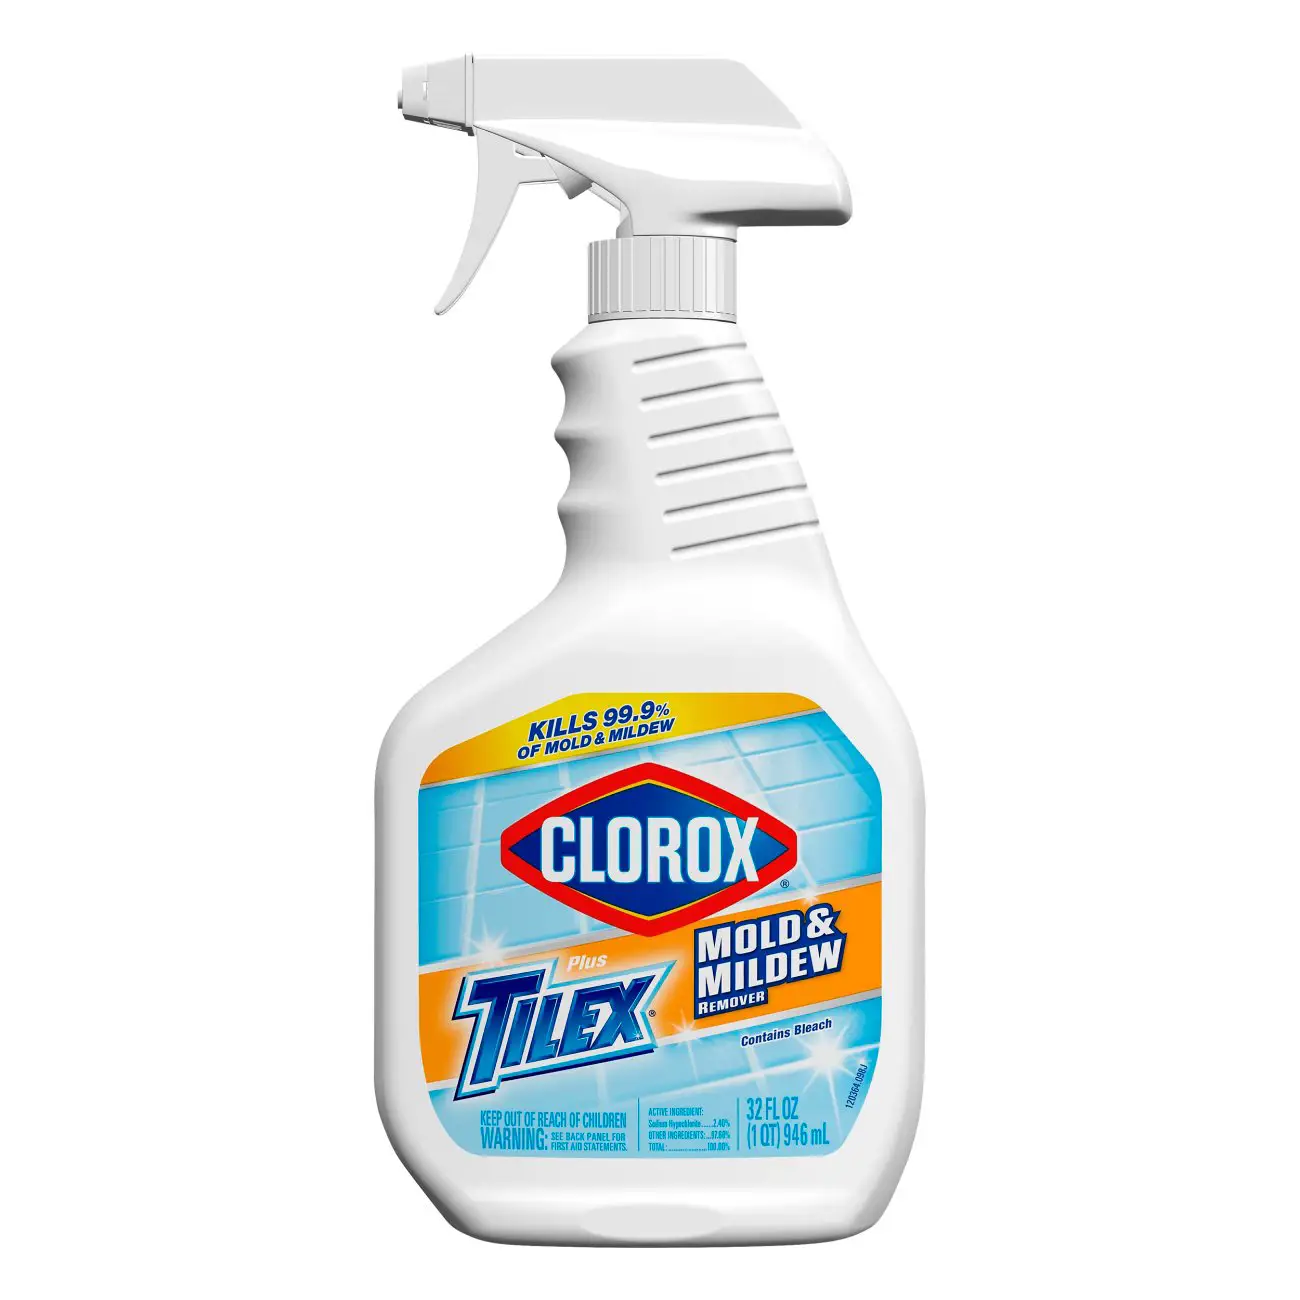 Clorox Tilex Mold &  Mildew Remover Spray Economy Size